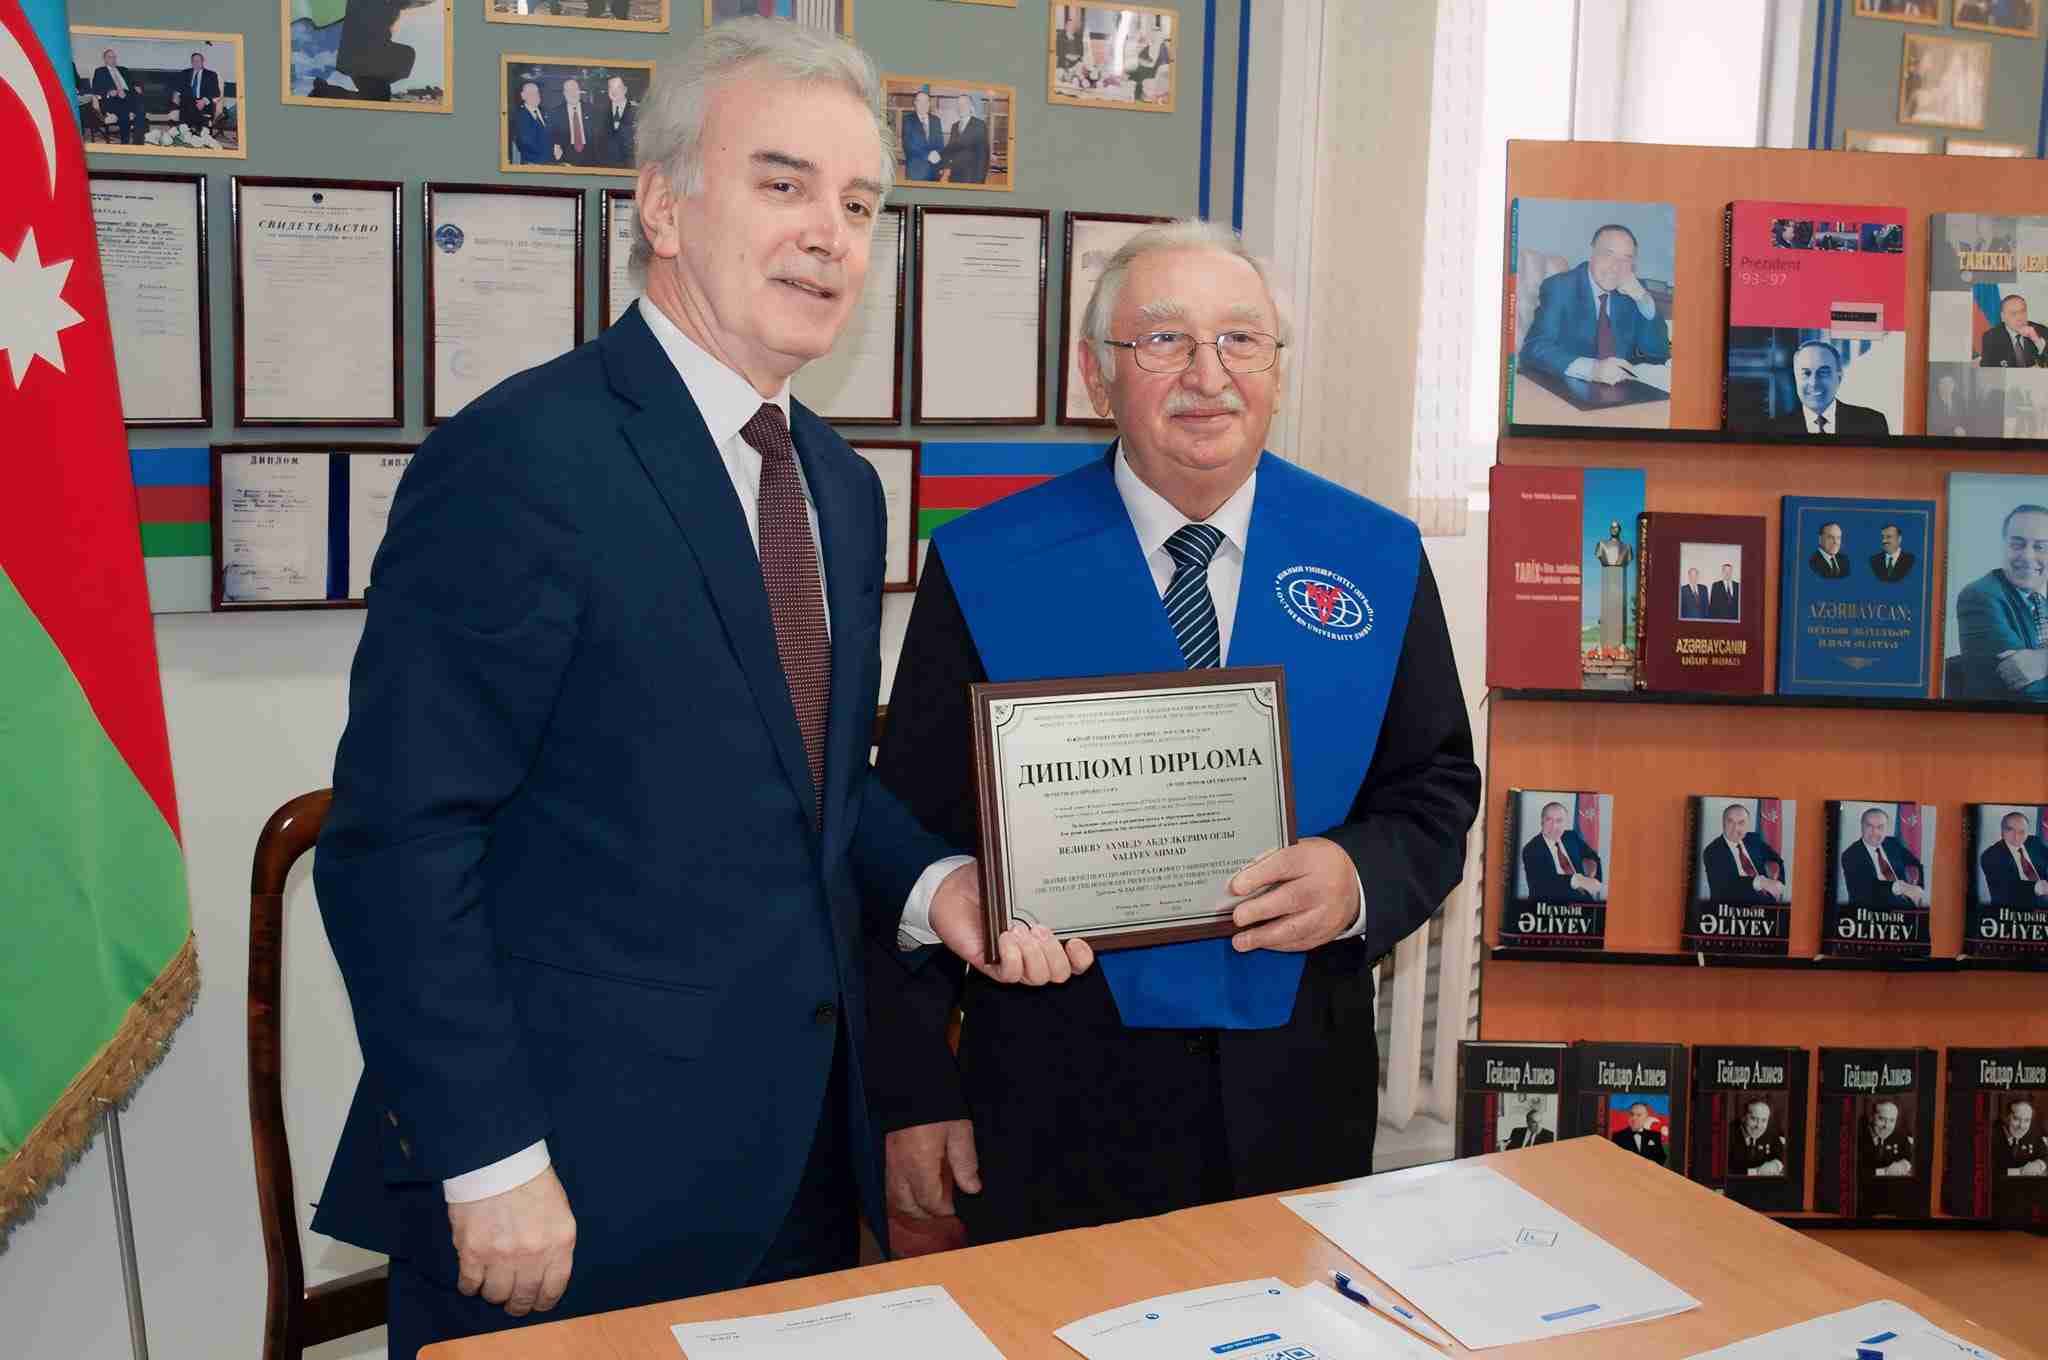 OYÜ rektörüne Güney Rusya Üniversitesi (GRU) fahri profesörlük diploması verildi